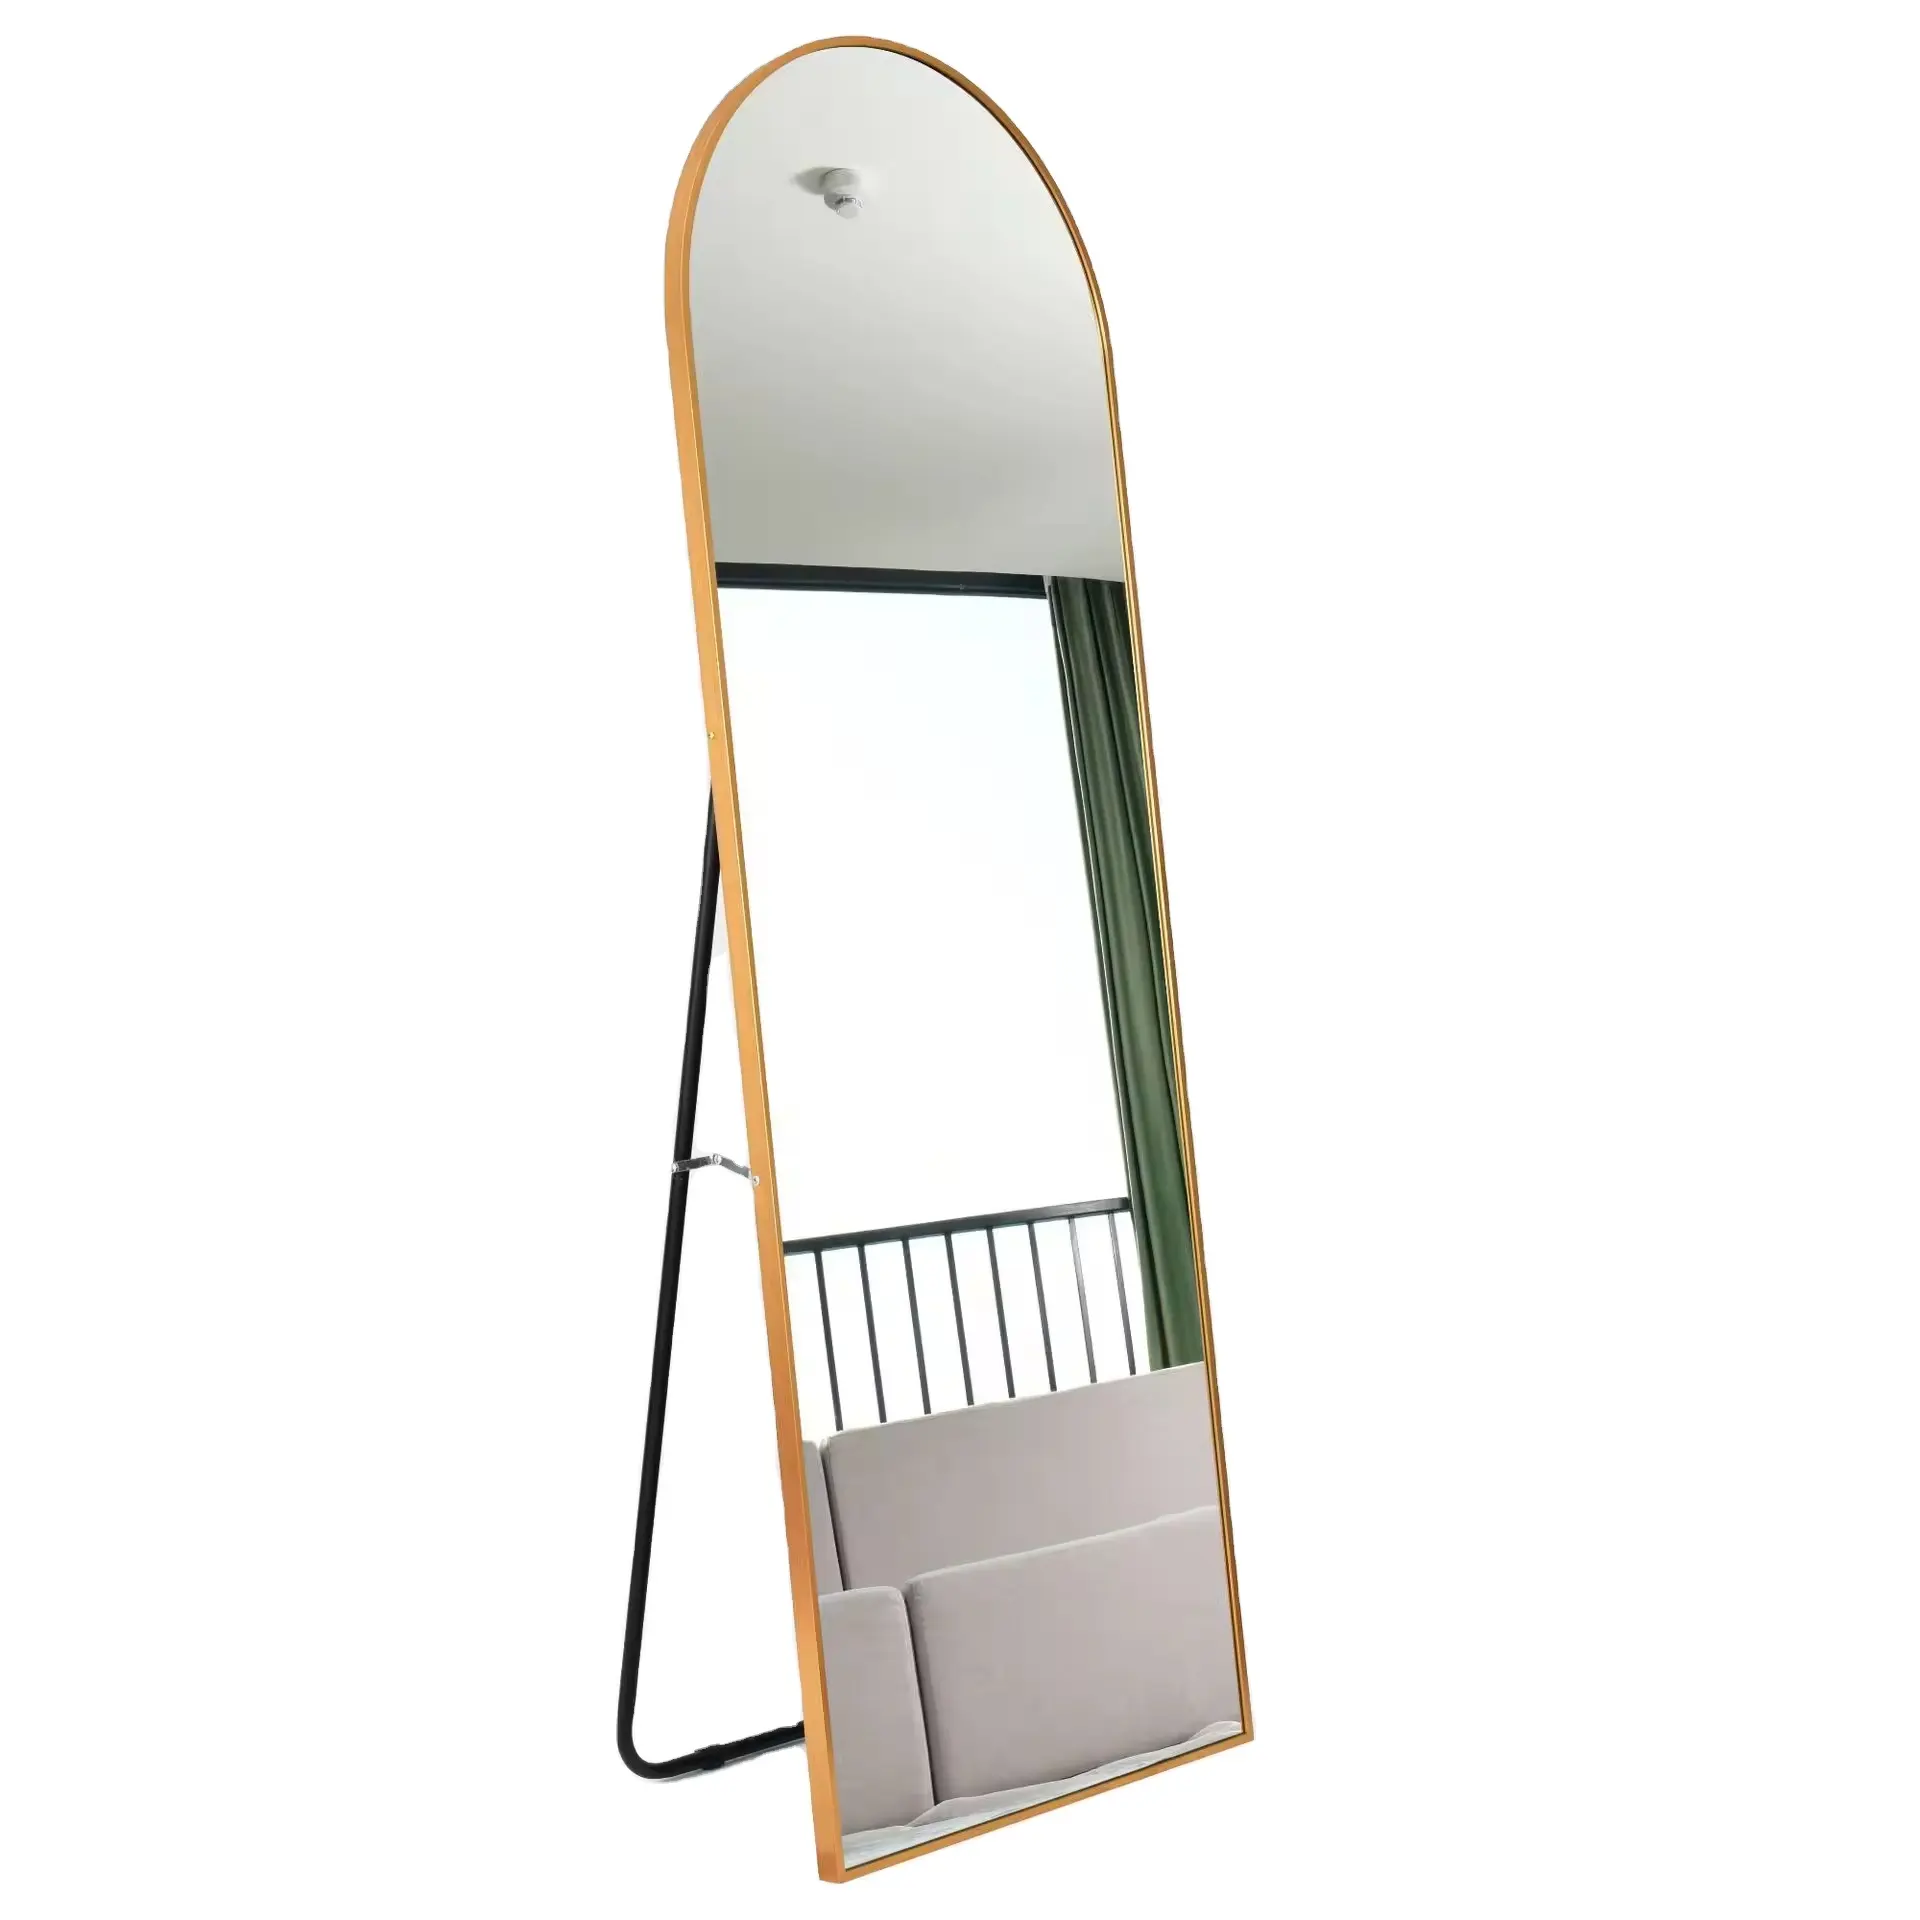 Miroir de sol en alliage d'aluminium, miroir mural suspendu dressing miroir moderne simple pour magasin de vêtements